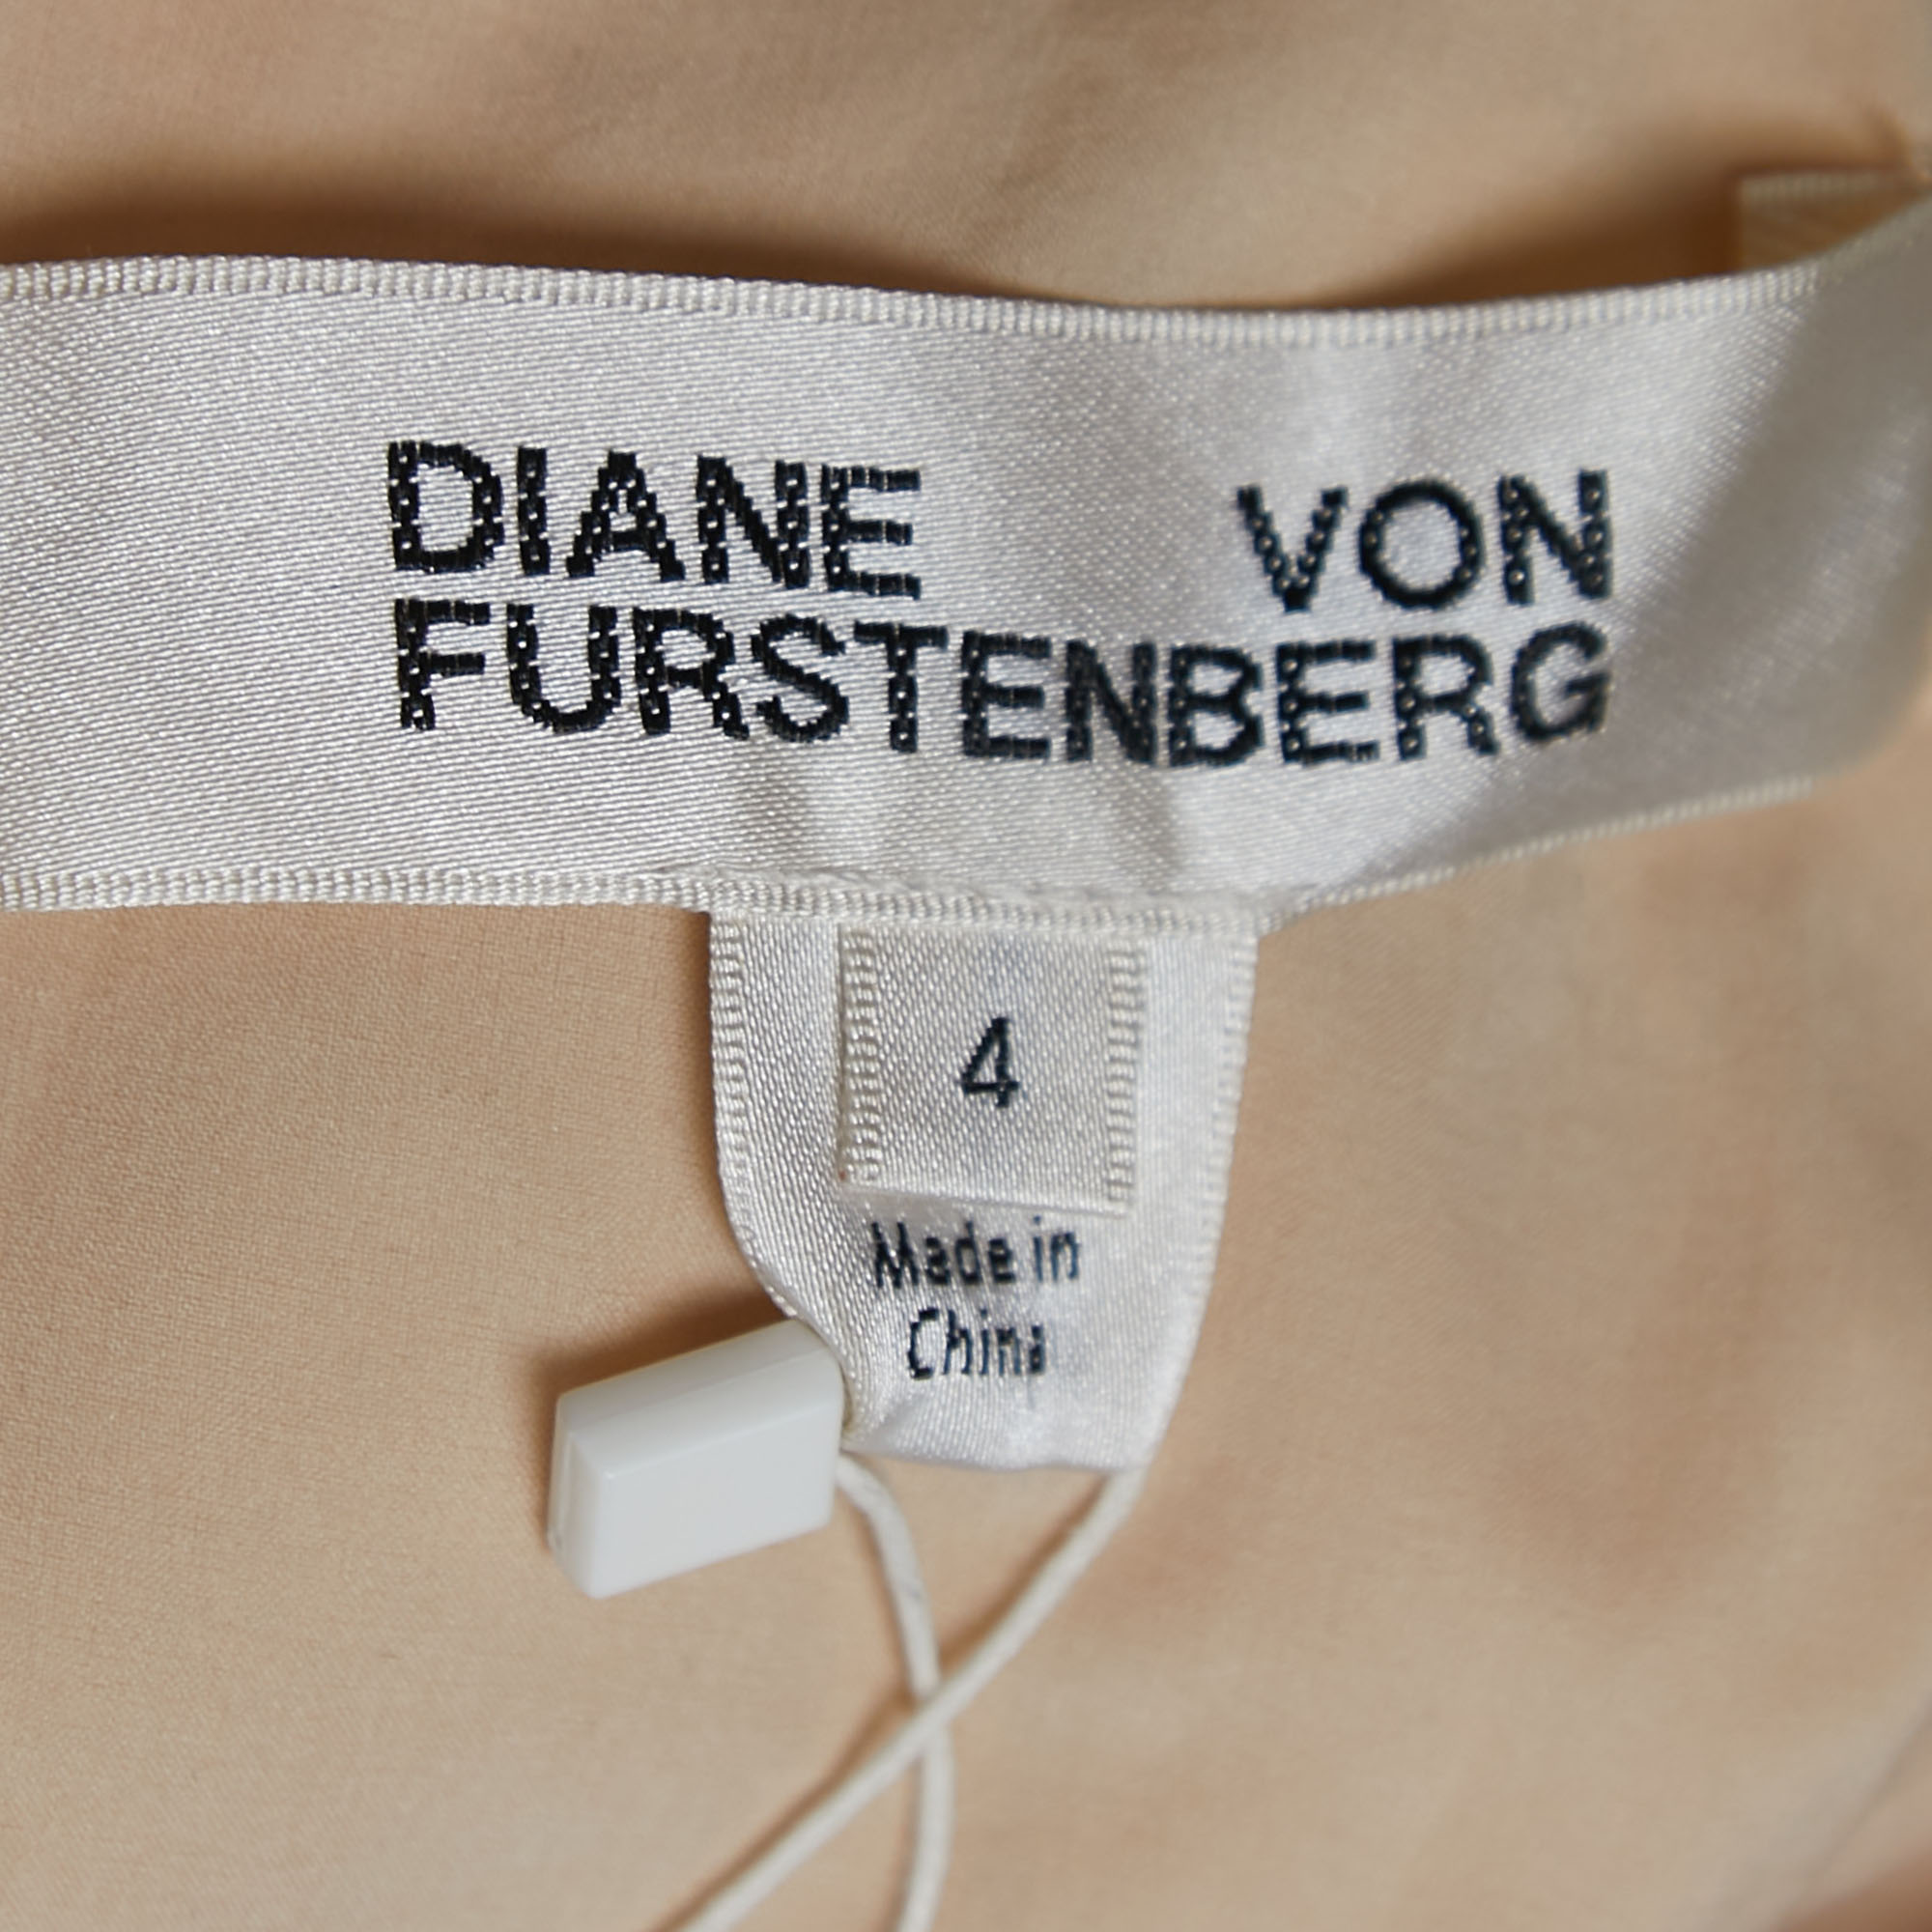 Diane Von Furstenberg Off-White/Light Orange Sequined Silk One Shoulder Midi Dress S